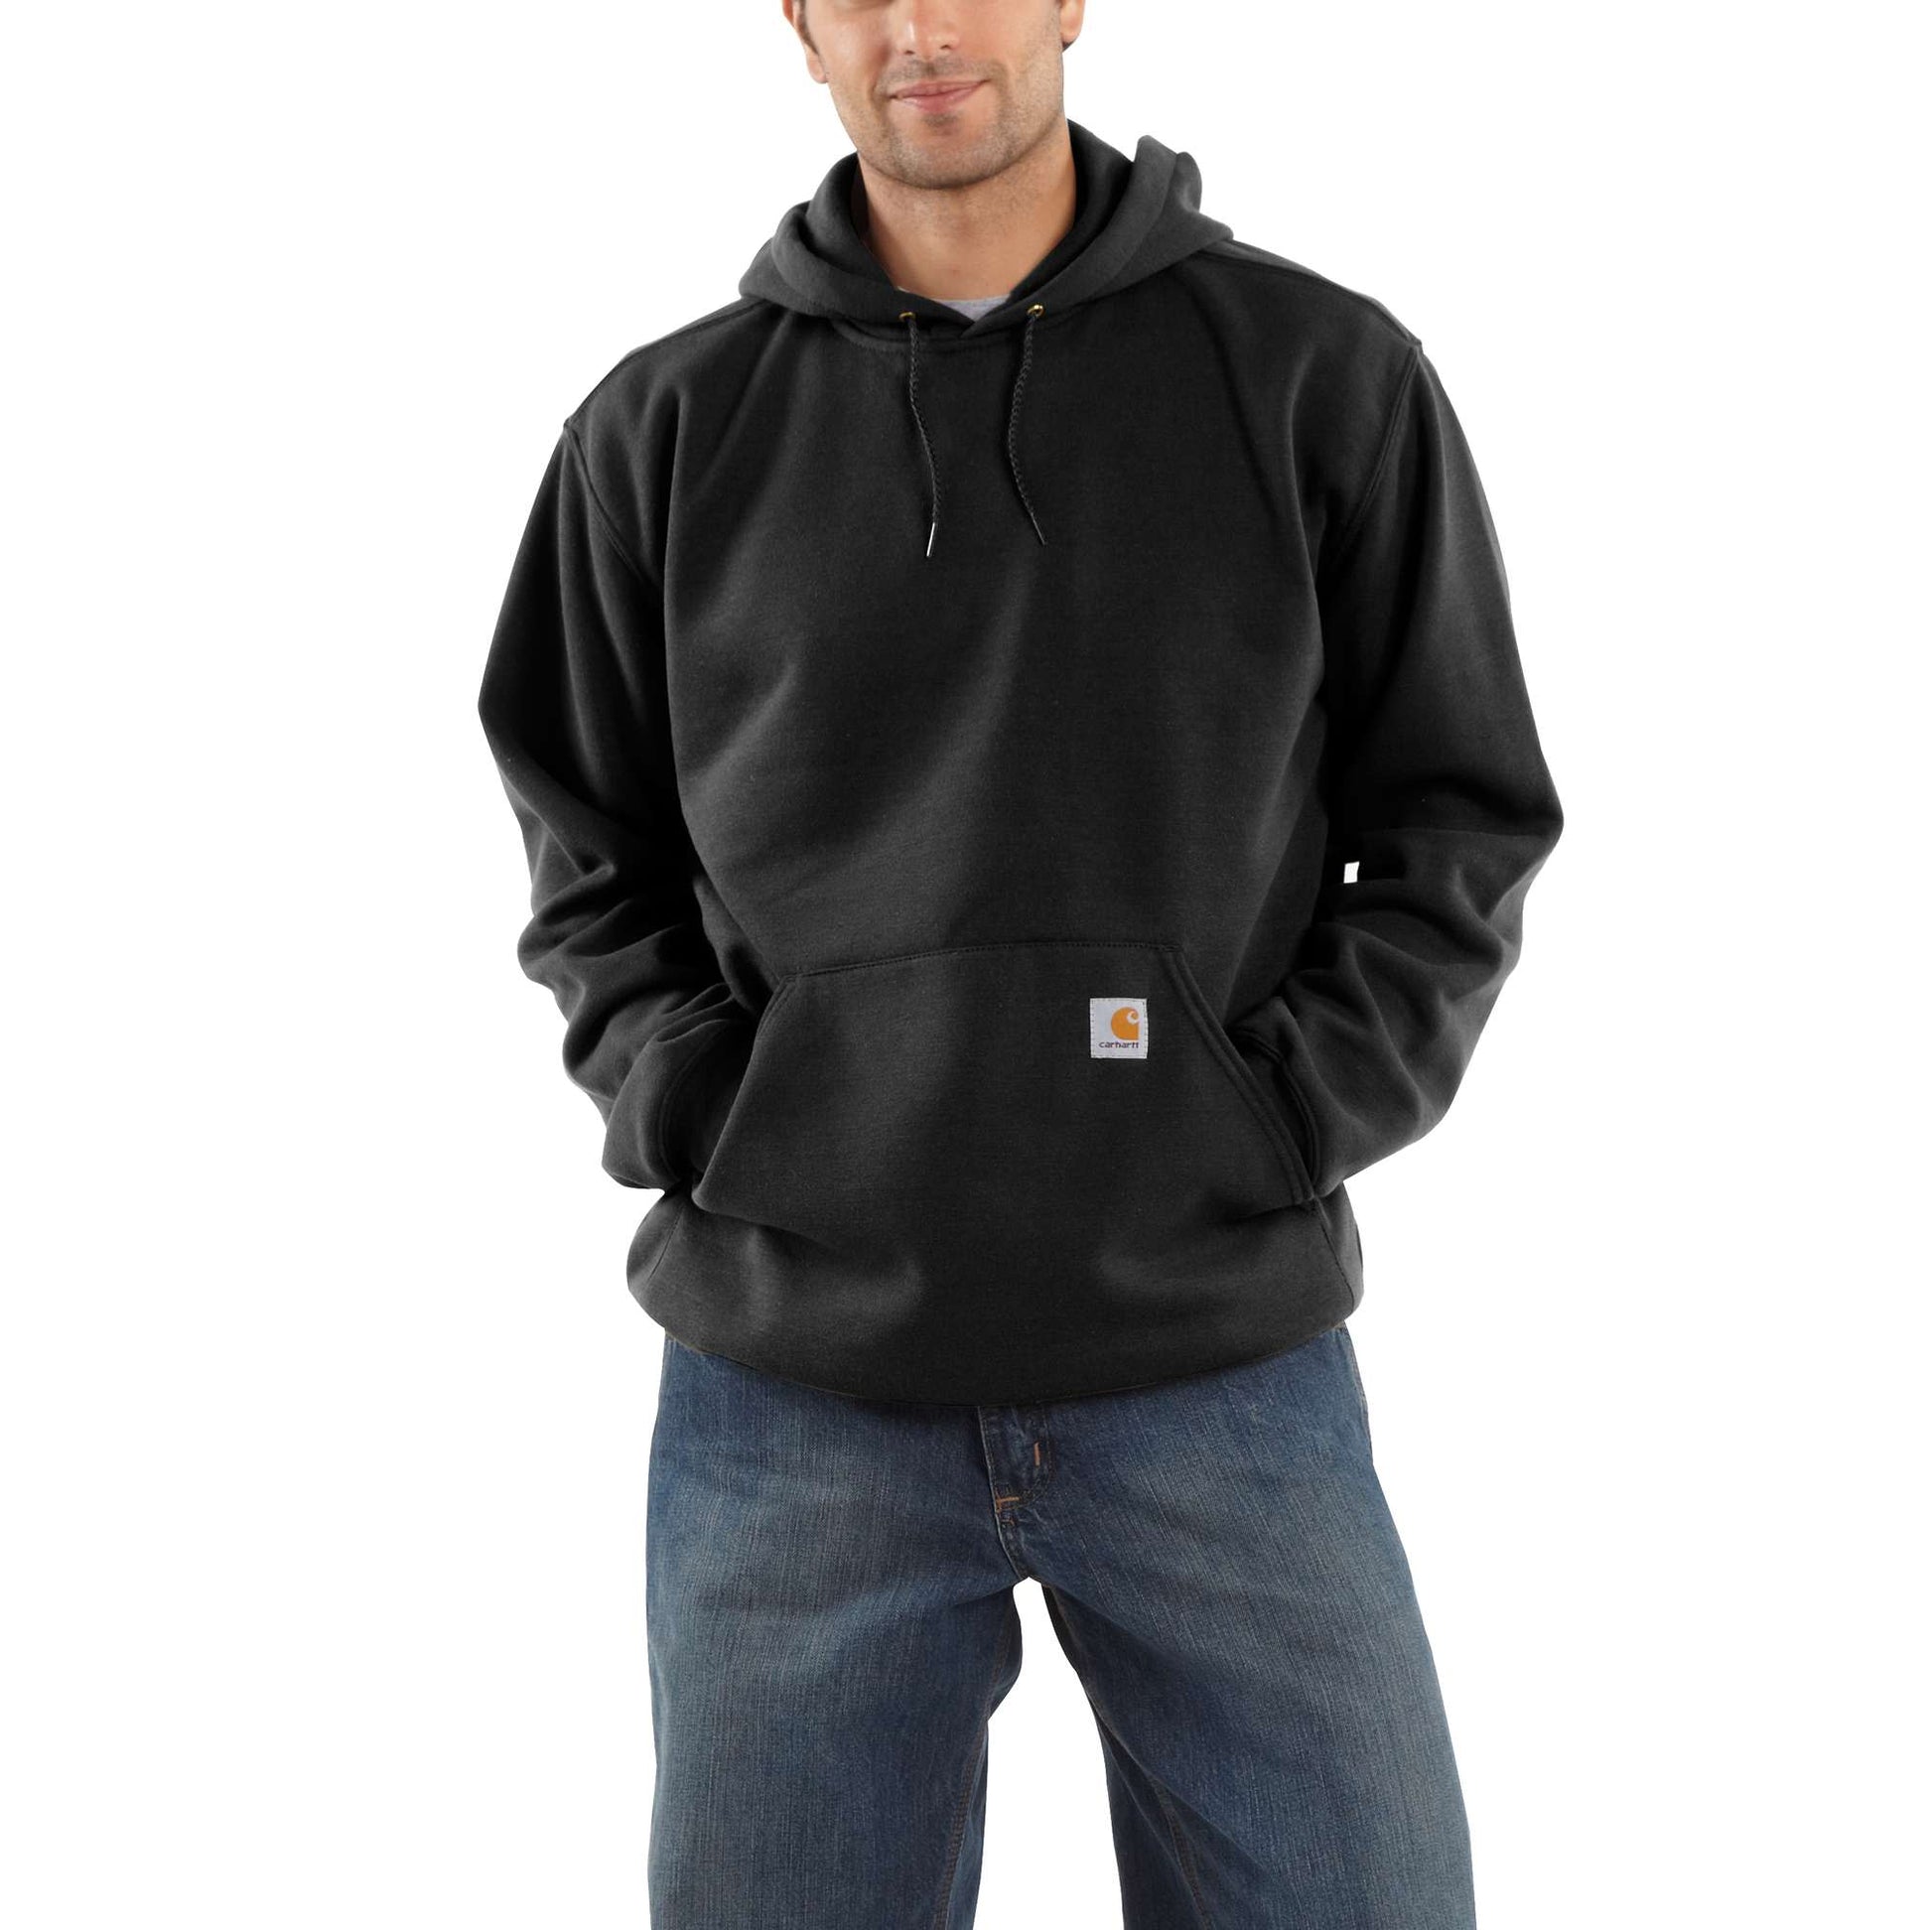 Tek Gear Plus Hoodies & Sweatshirts for Women 3X Size for sale